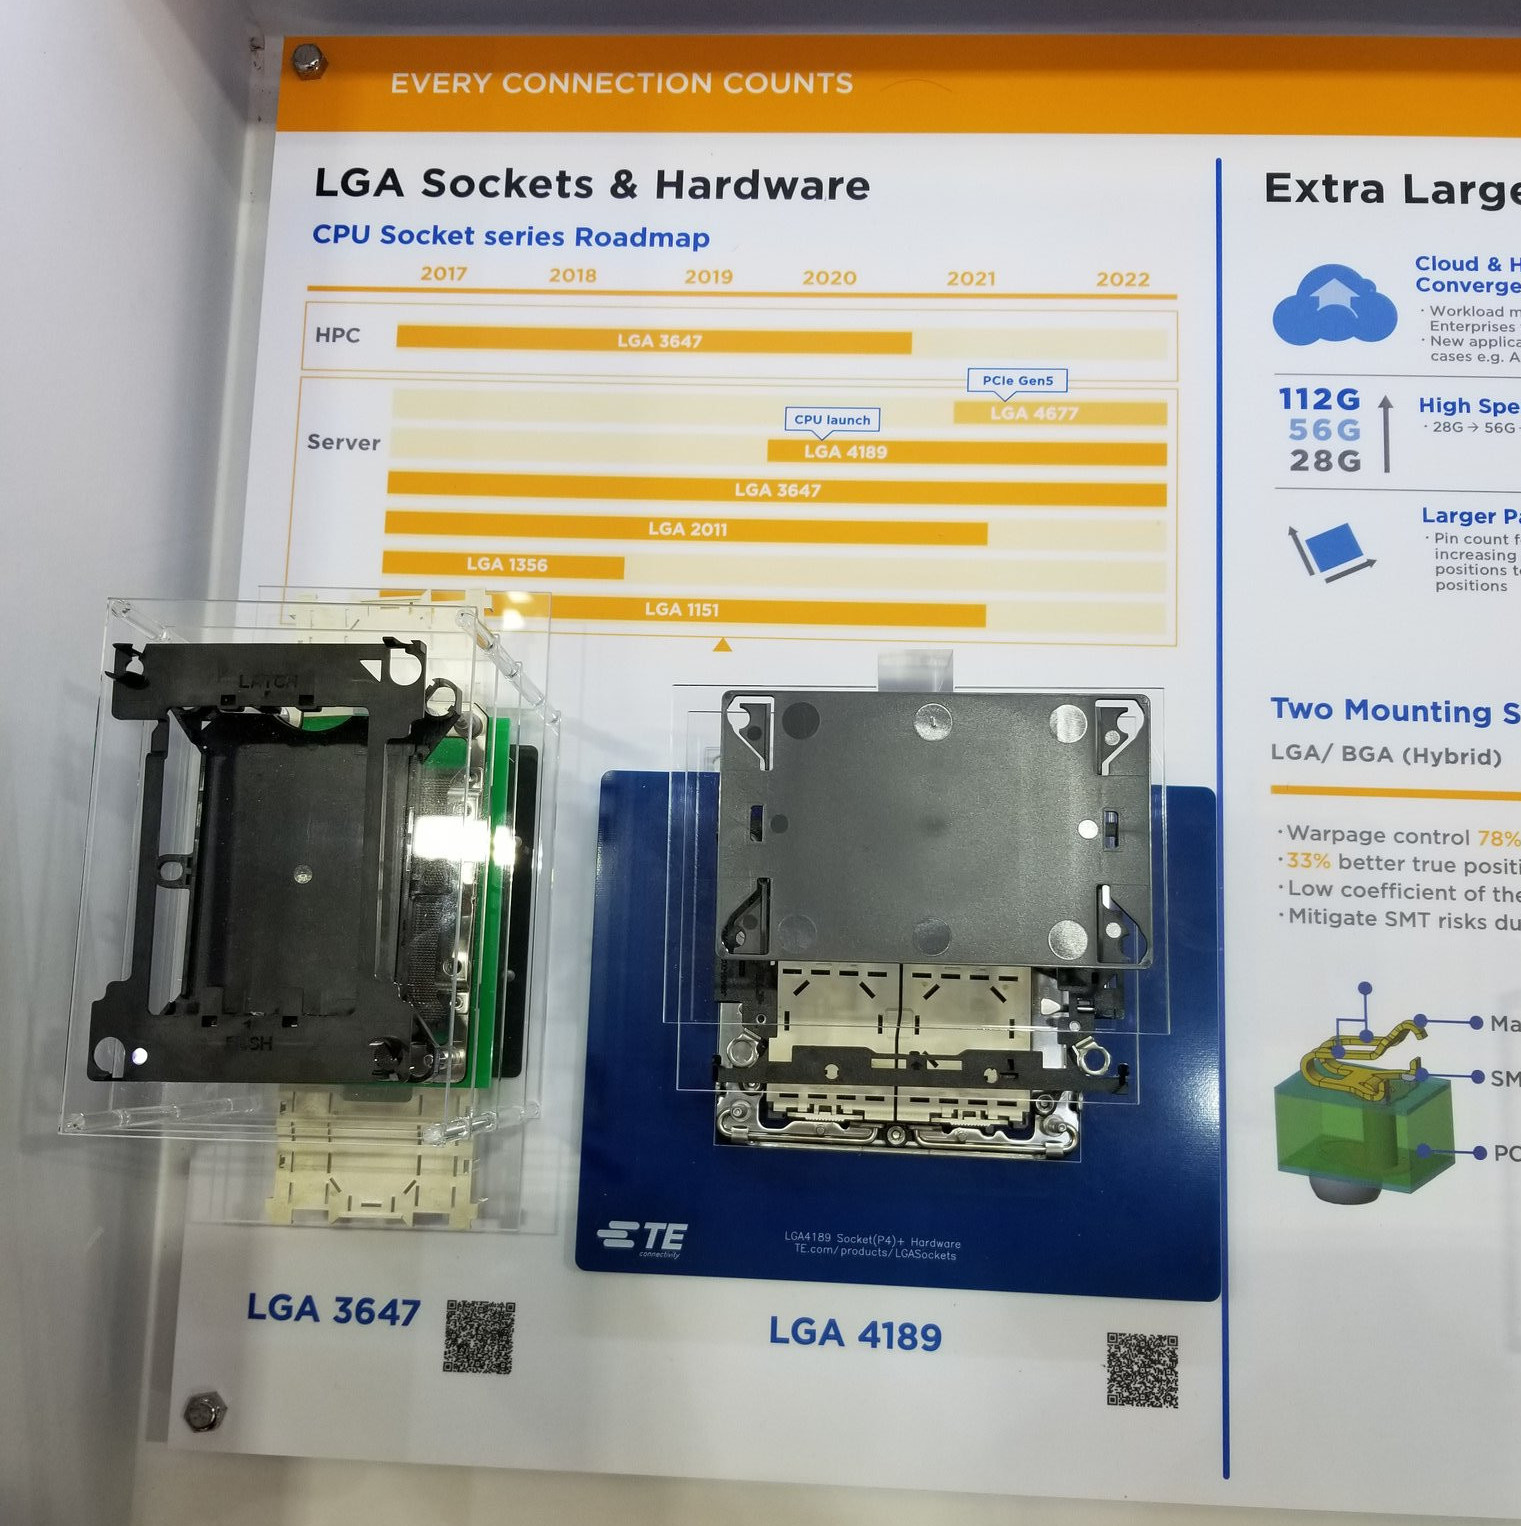 На замену LGA3647. Разъём LGA4677 для следующего поколения серверных процессоров Intel (Sapphire Rapids) уже готов